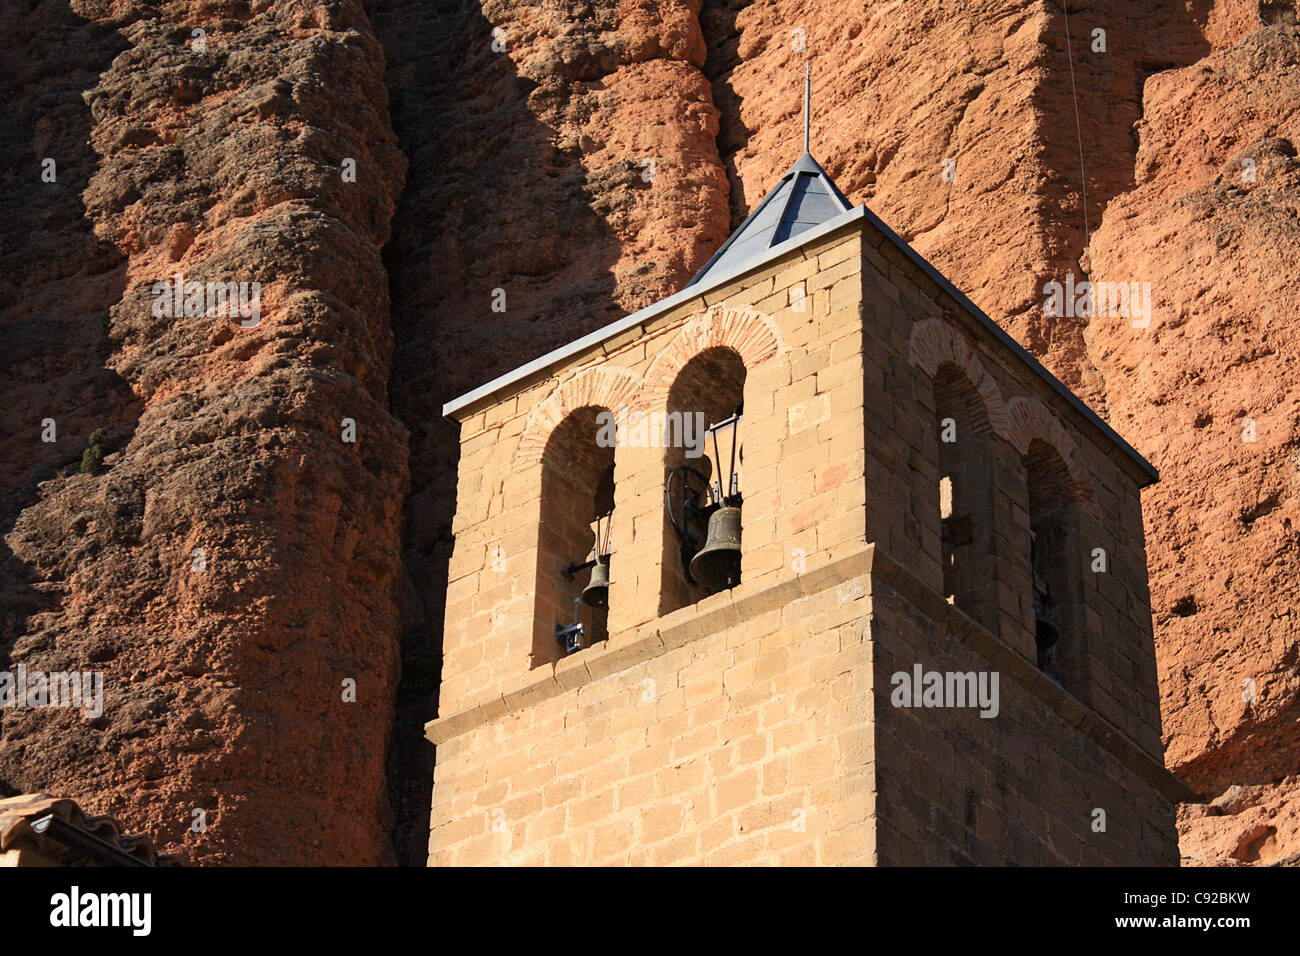 Espagne, Aragon, Province de Huesca, Mallos de Riglos, Iglesia Parroquial, clocher à côté de rock formations Banque D'Images